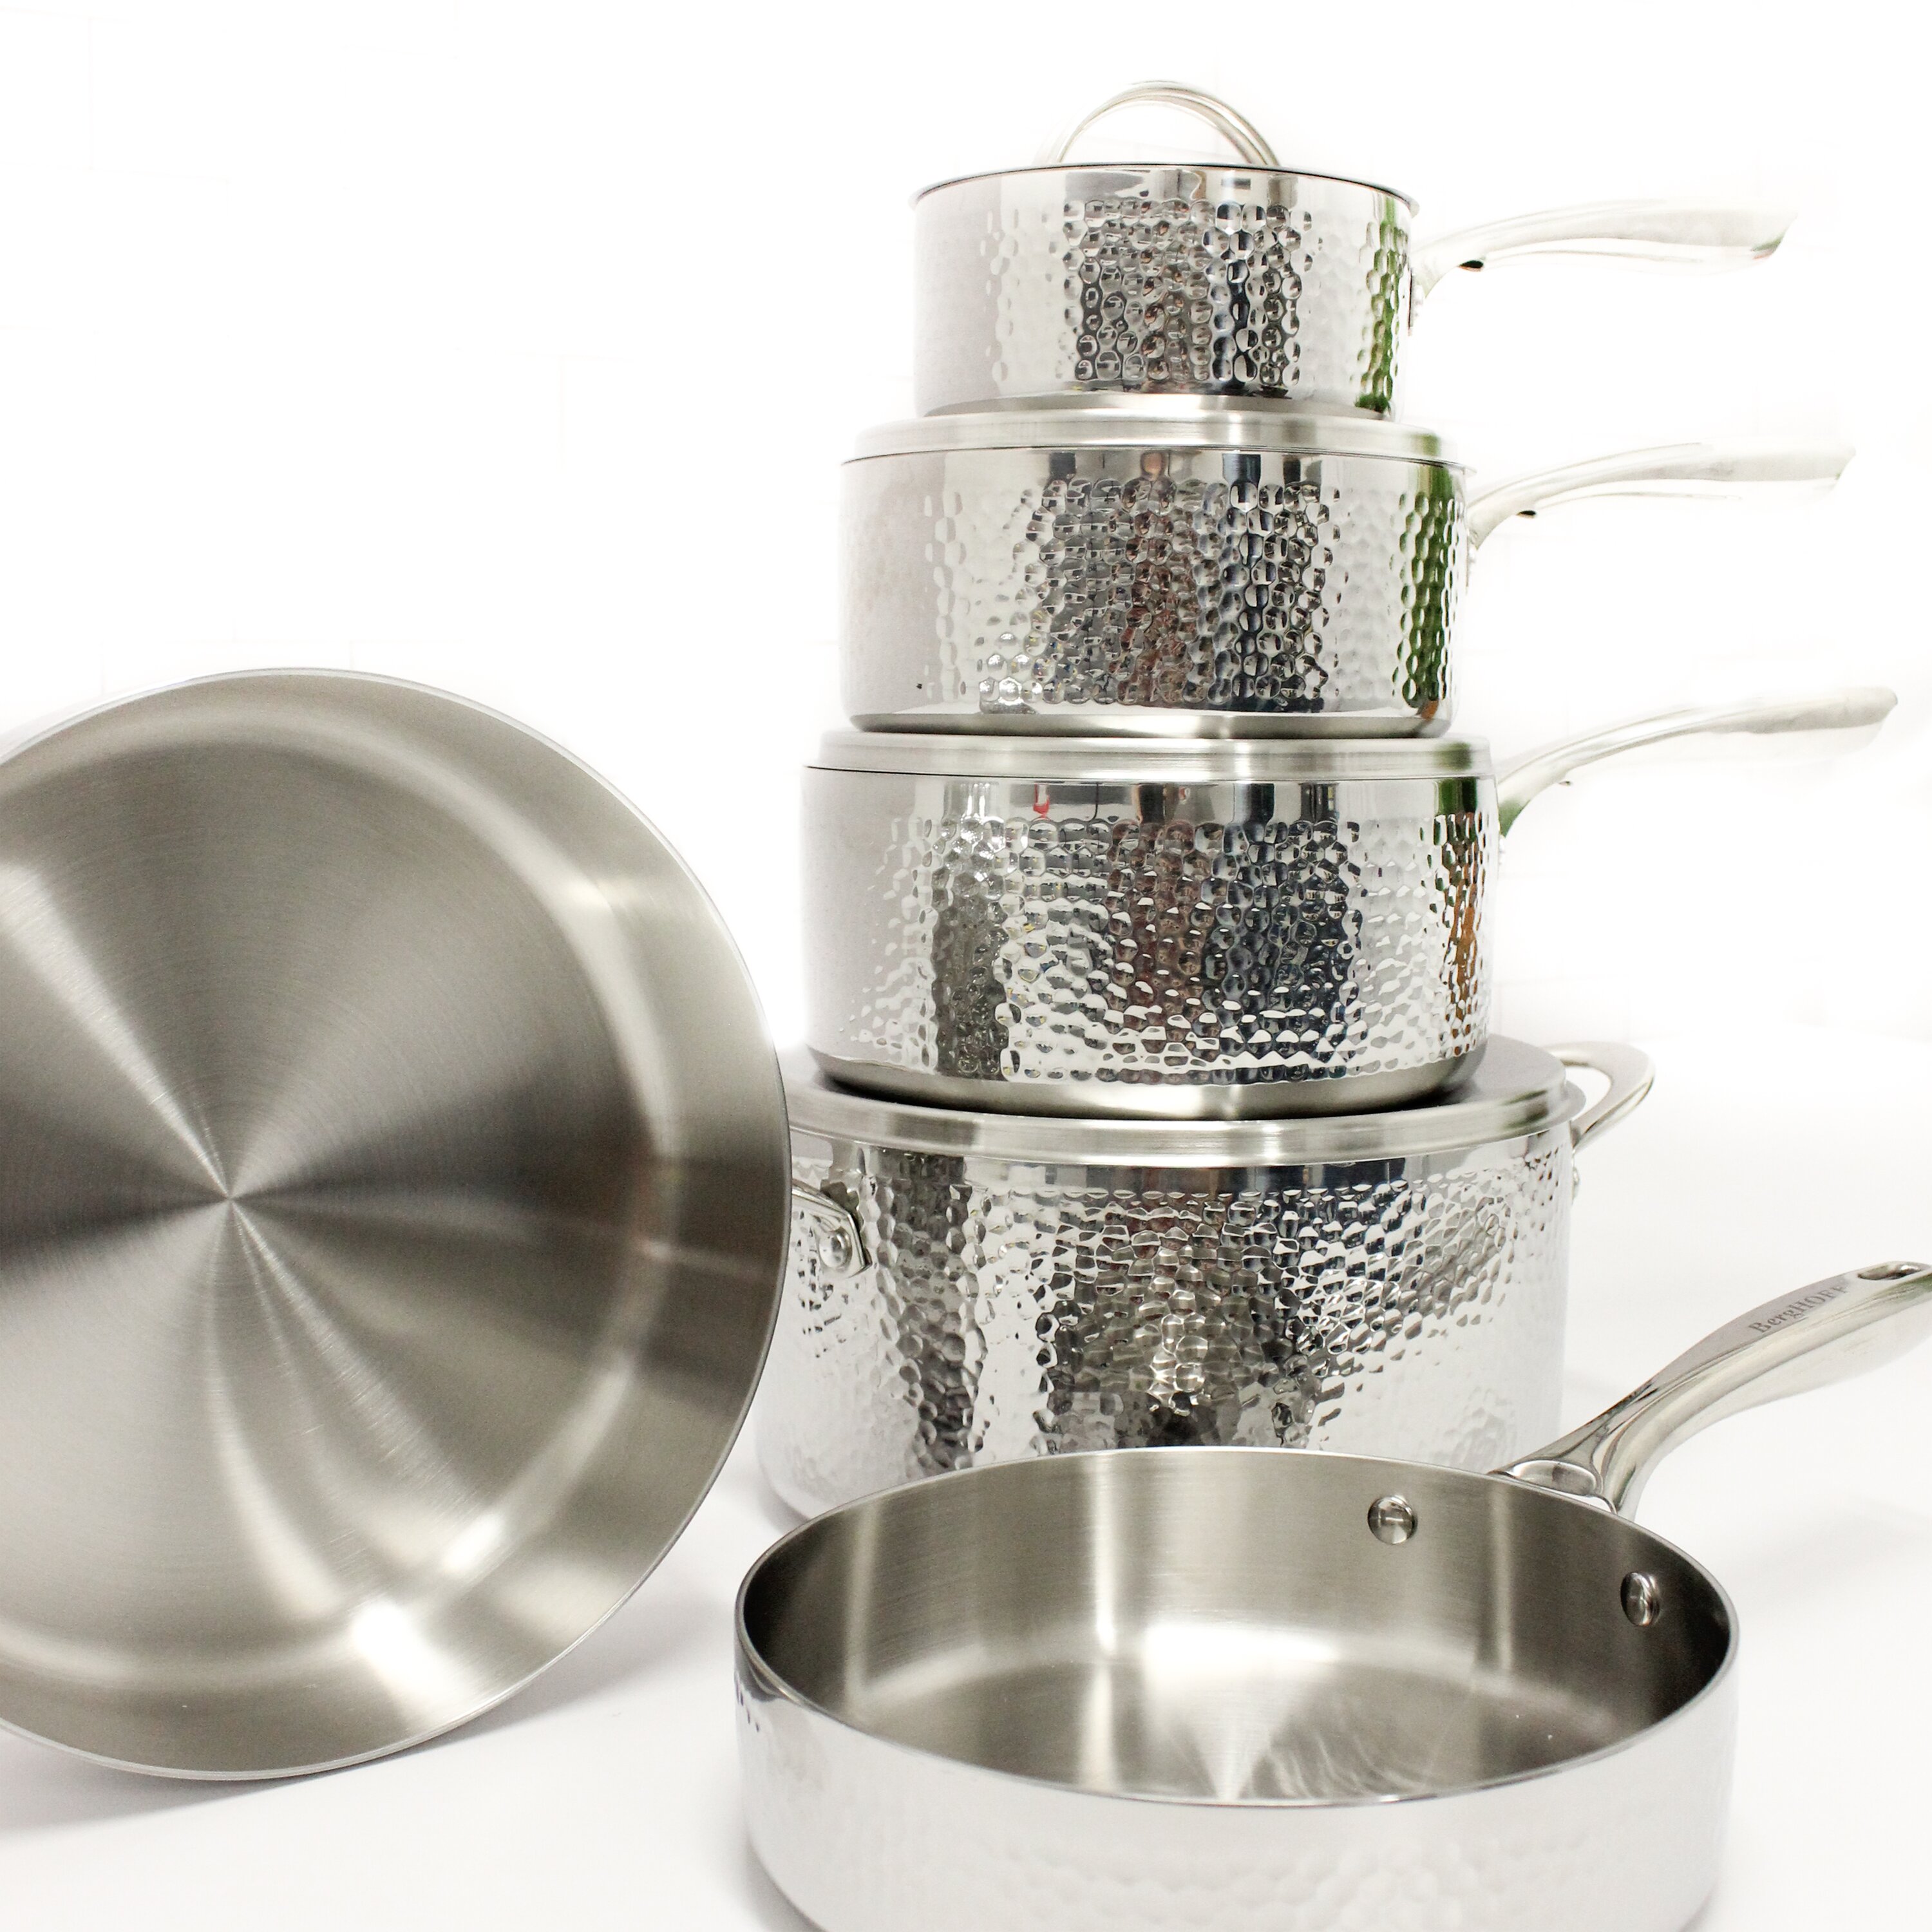 BergHOFF International 10 Piece Stainless Steel Cookware Set